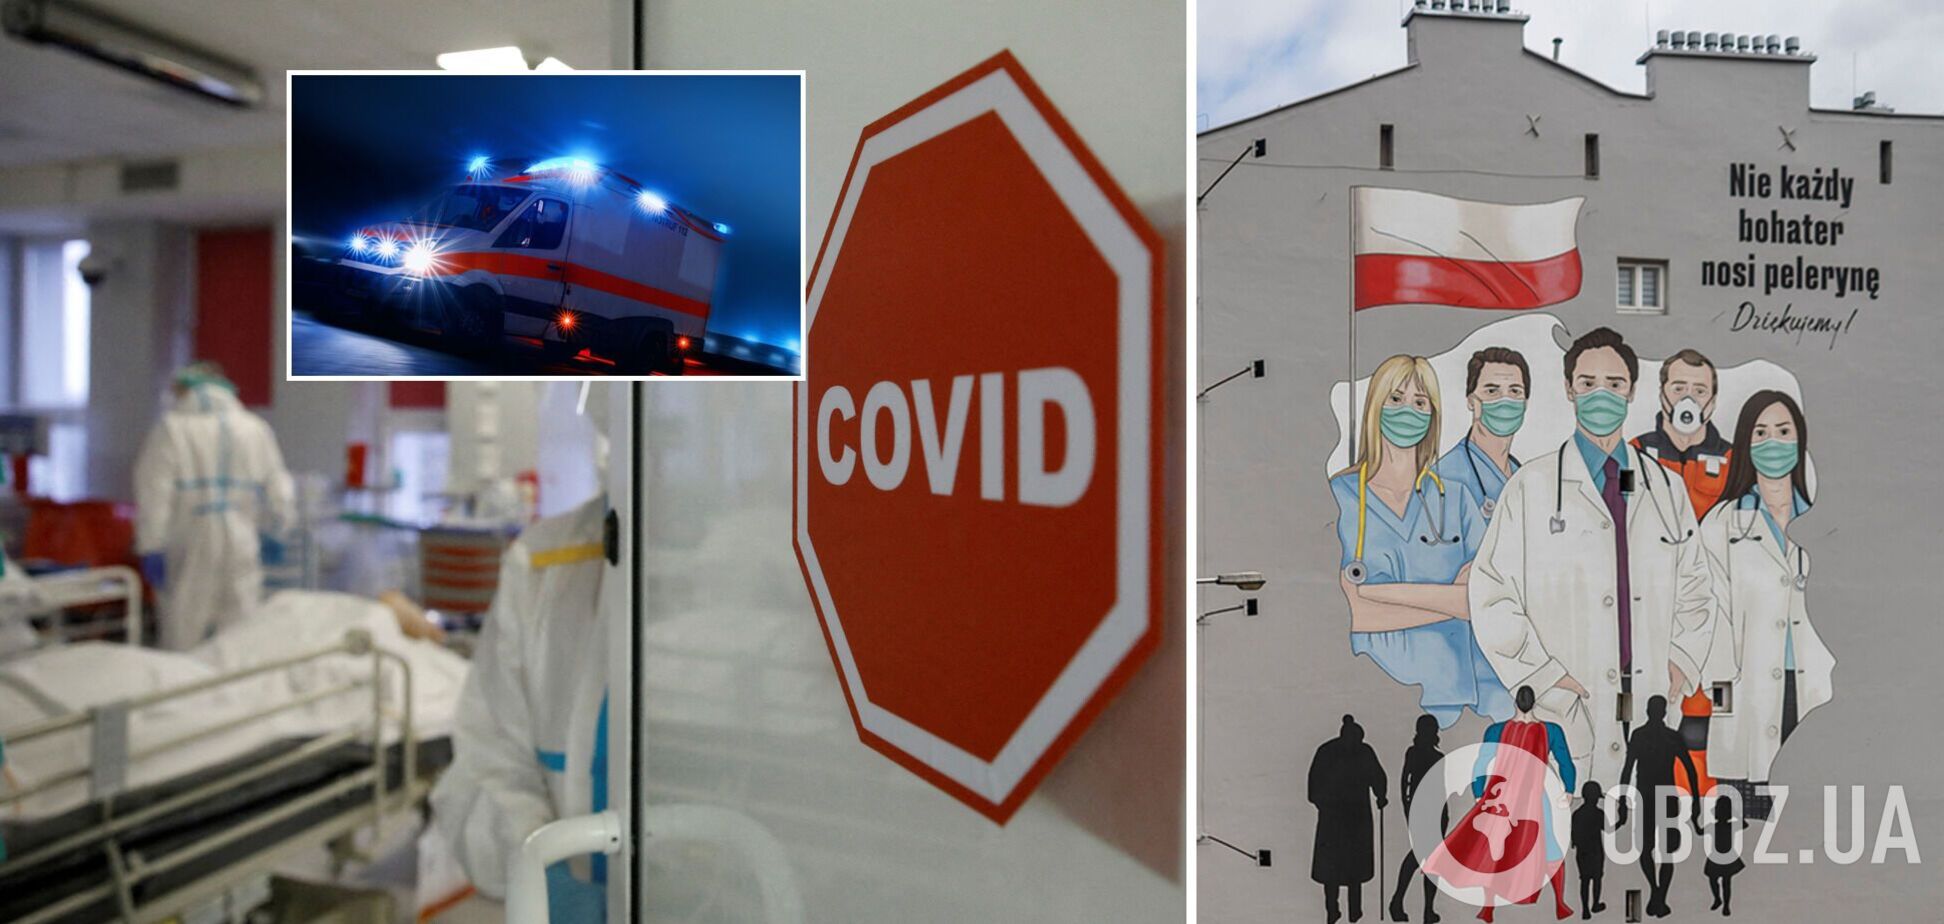 Количество умерших от COVID-19 в Польше превысило 100 тыс. человек